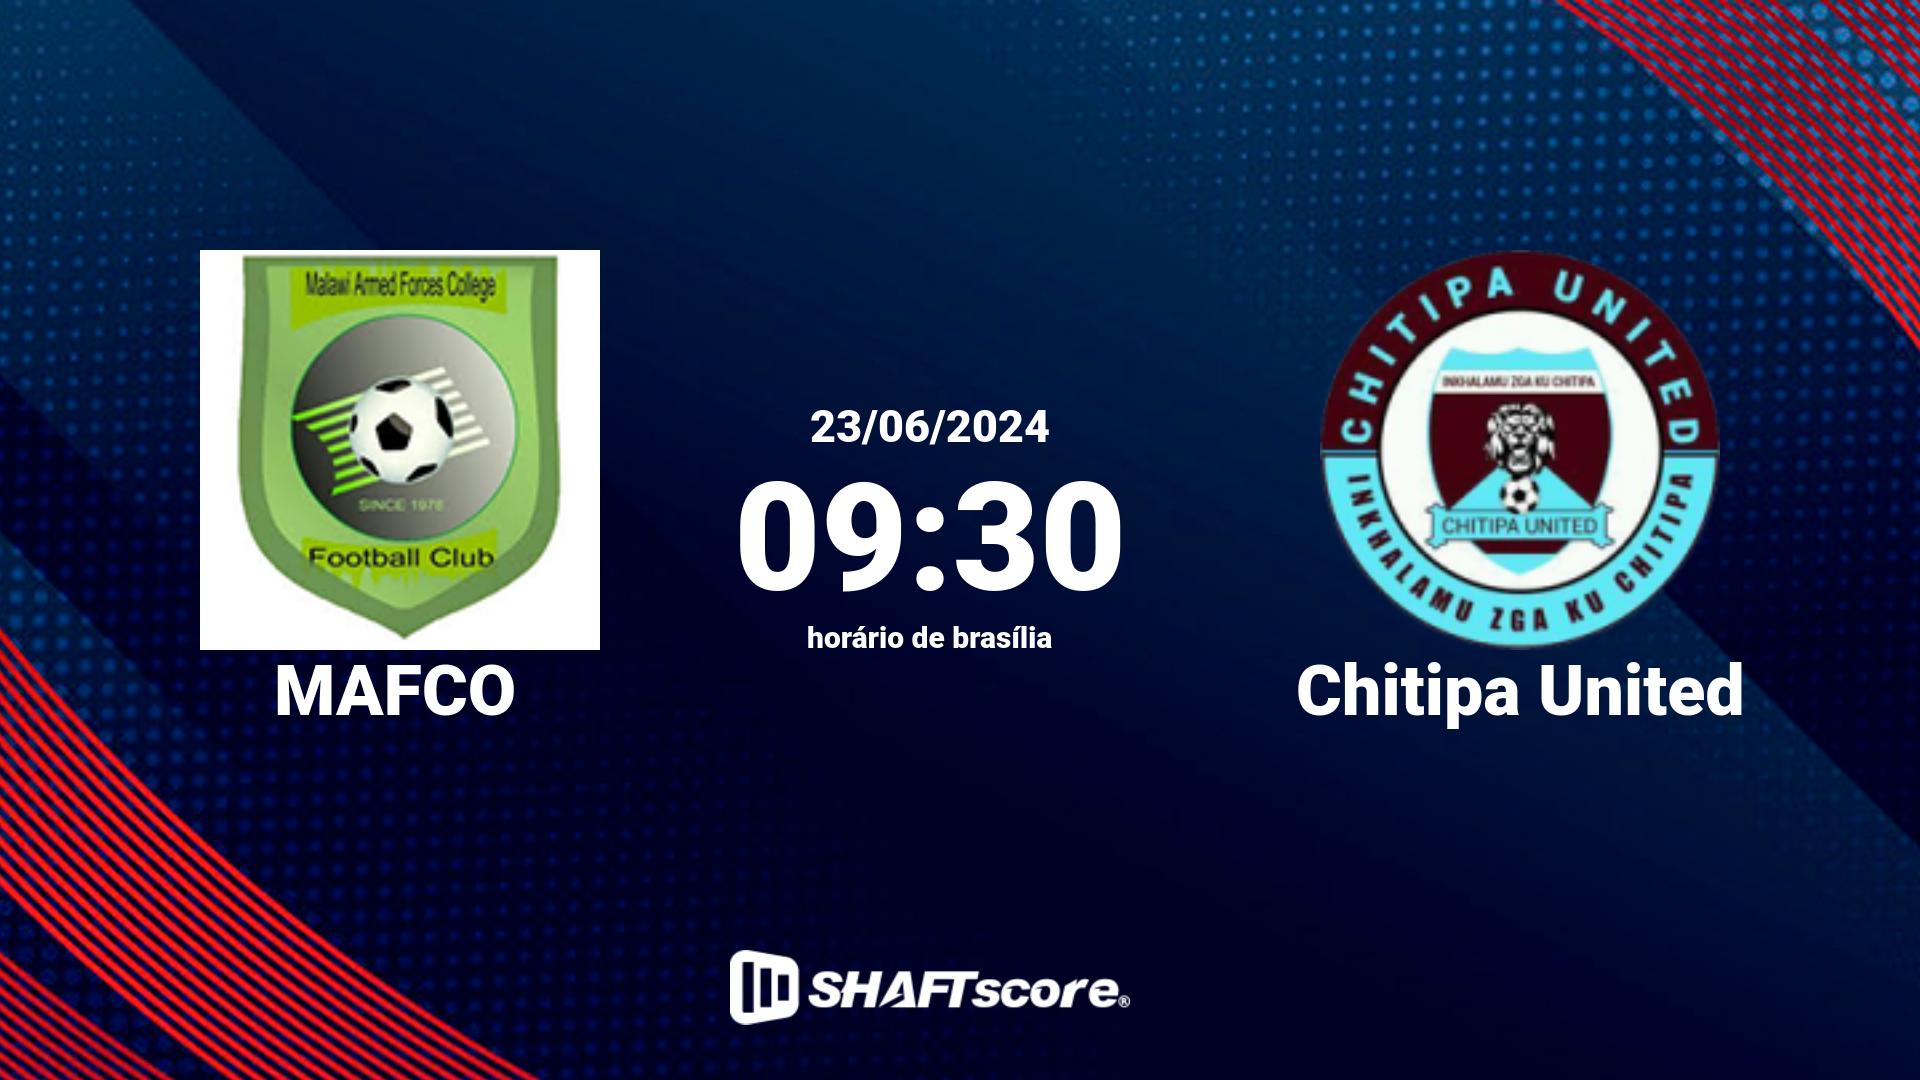 Estatísticas do jogo MAFCO vs Chitipa United 23.06 09:30